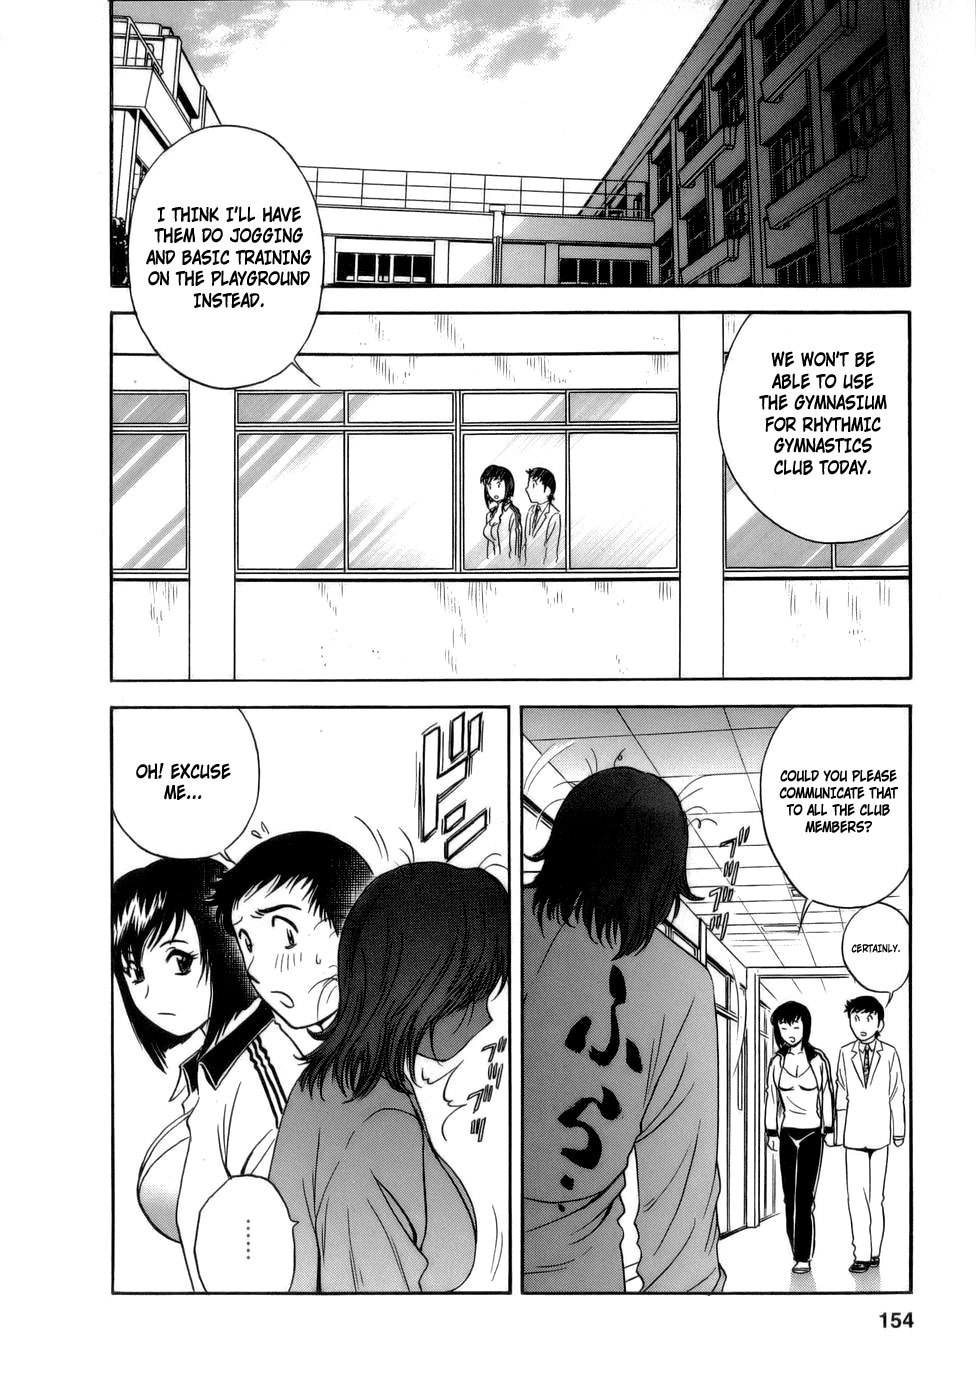 Mo-Retsu! Boin SenseiVol.1 154 hentai manga